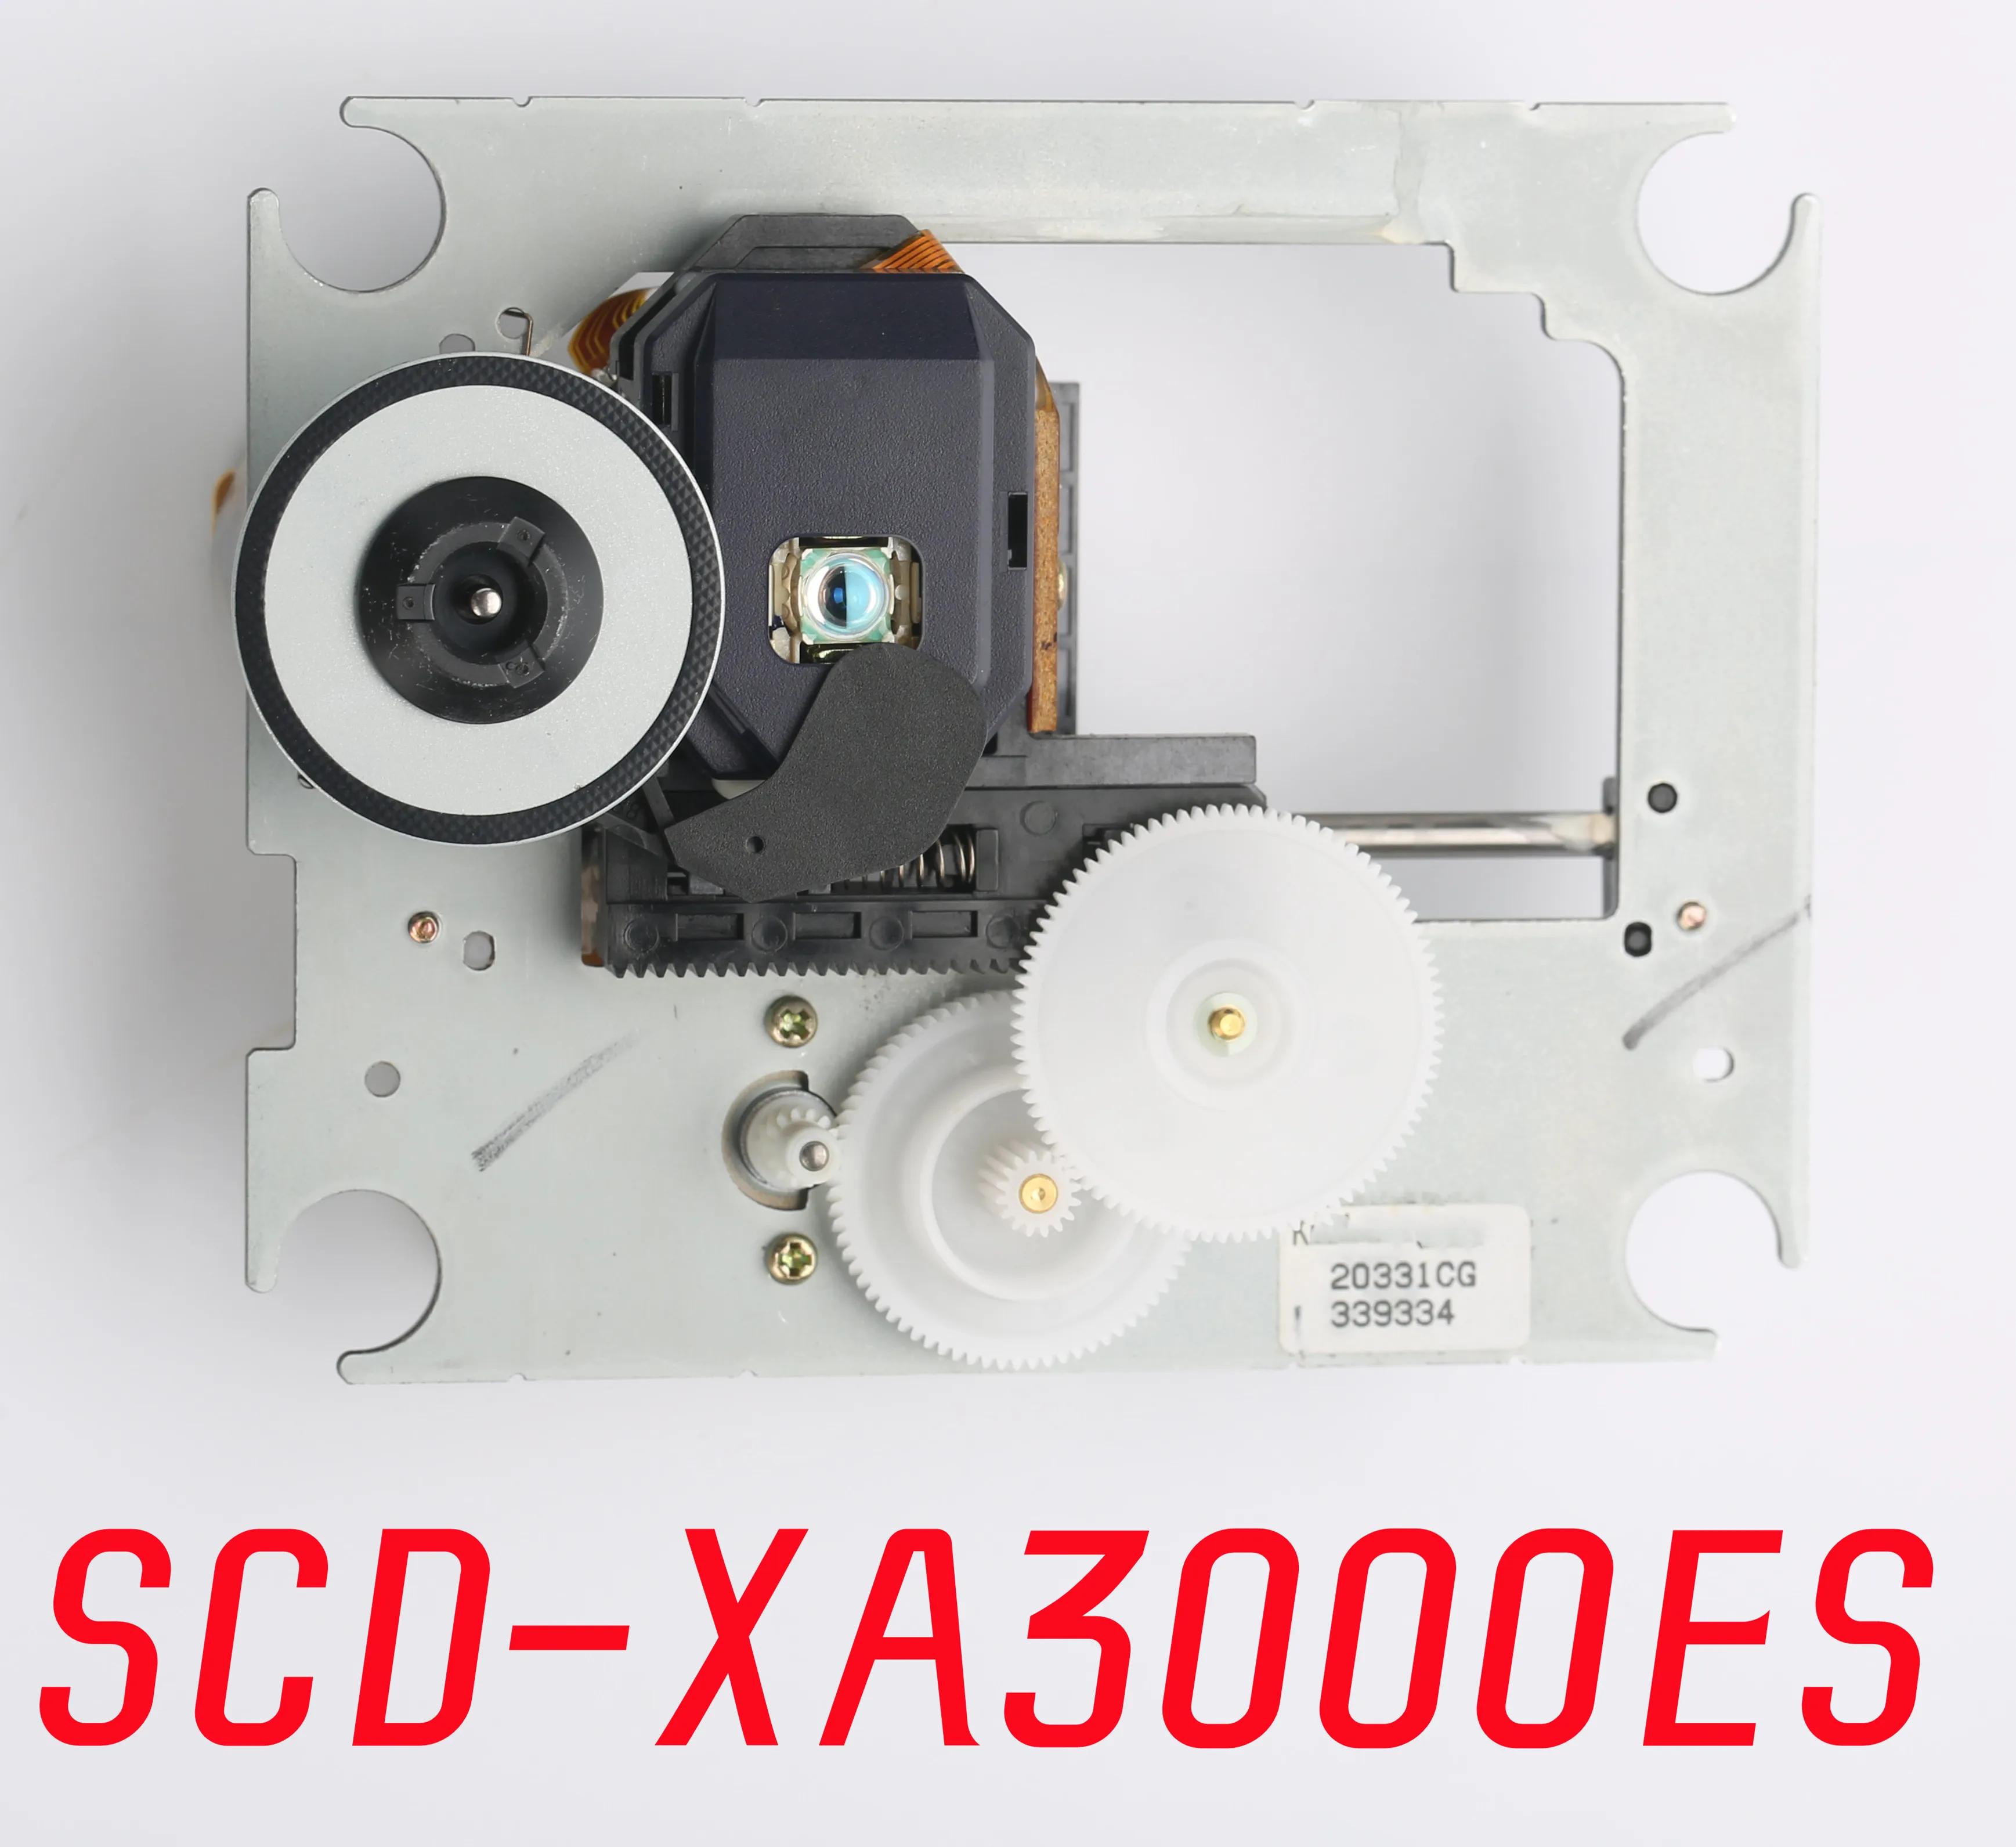  SCD-XA3000ES SCD XA3000ES SCDXA3000ES  CD ÷̾    Ⱦ  ǰ ü